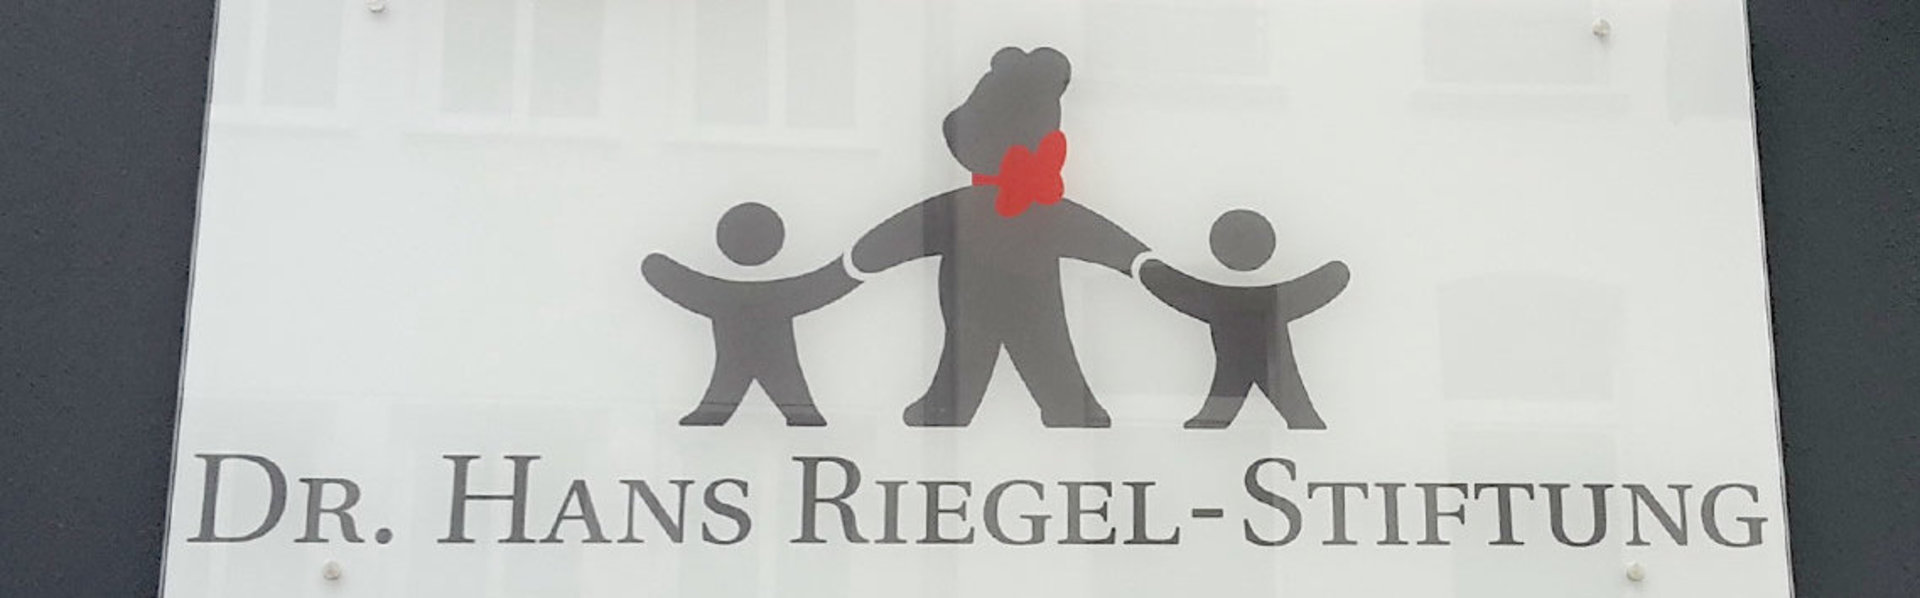 Dr. Hans Riegel-Stiftung: Impressum 